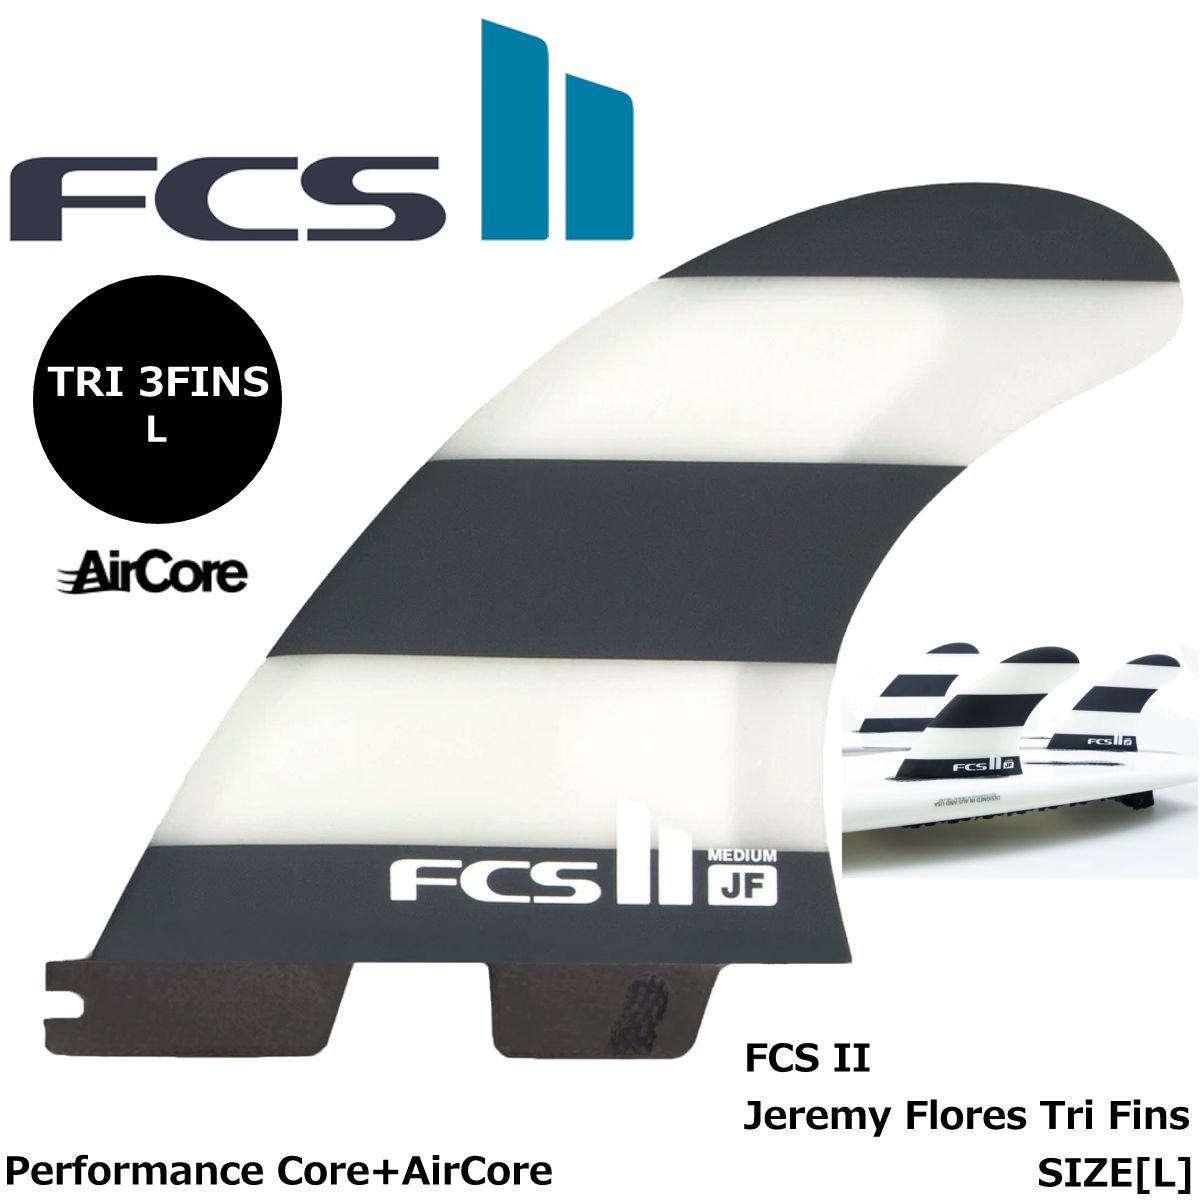 FCS フィン エフシーエス FCS II Jeremy Flores Tri Fins 3枚セット L(75-95kg) ジェレミー・フローリーズ  | スケートボード専門店カットバック